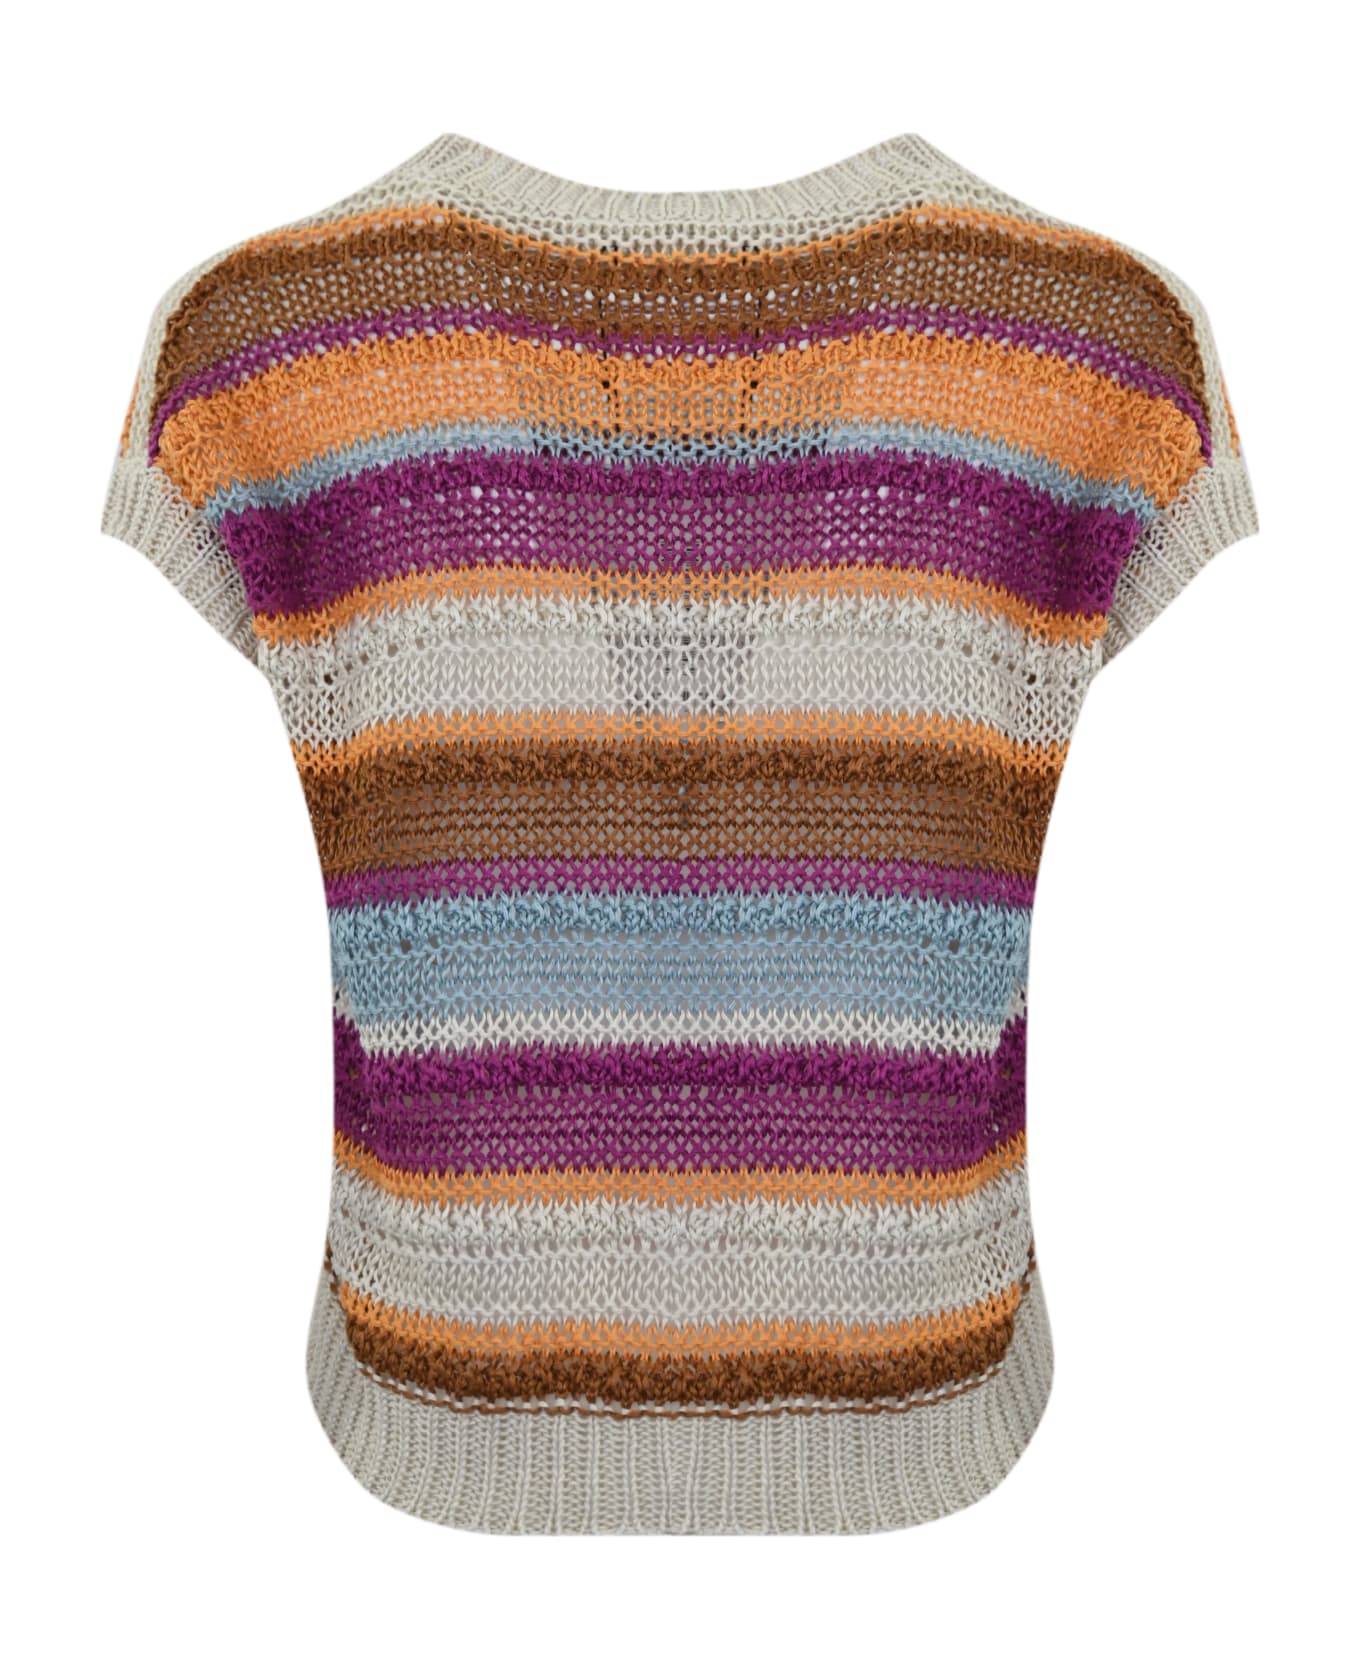 Weekend Max Mara 'acceso' Linen Sweater - Multicolor